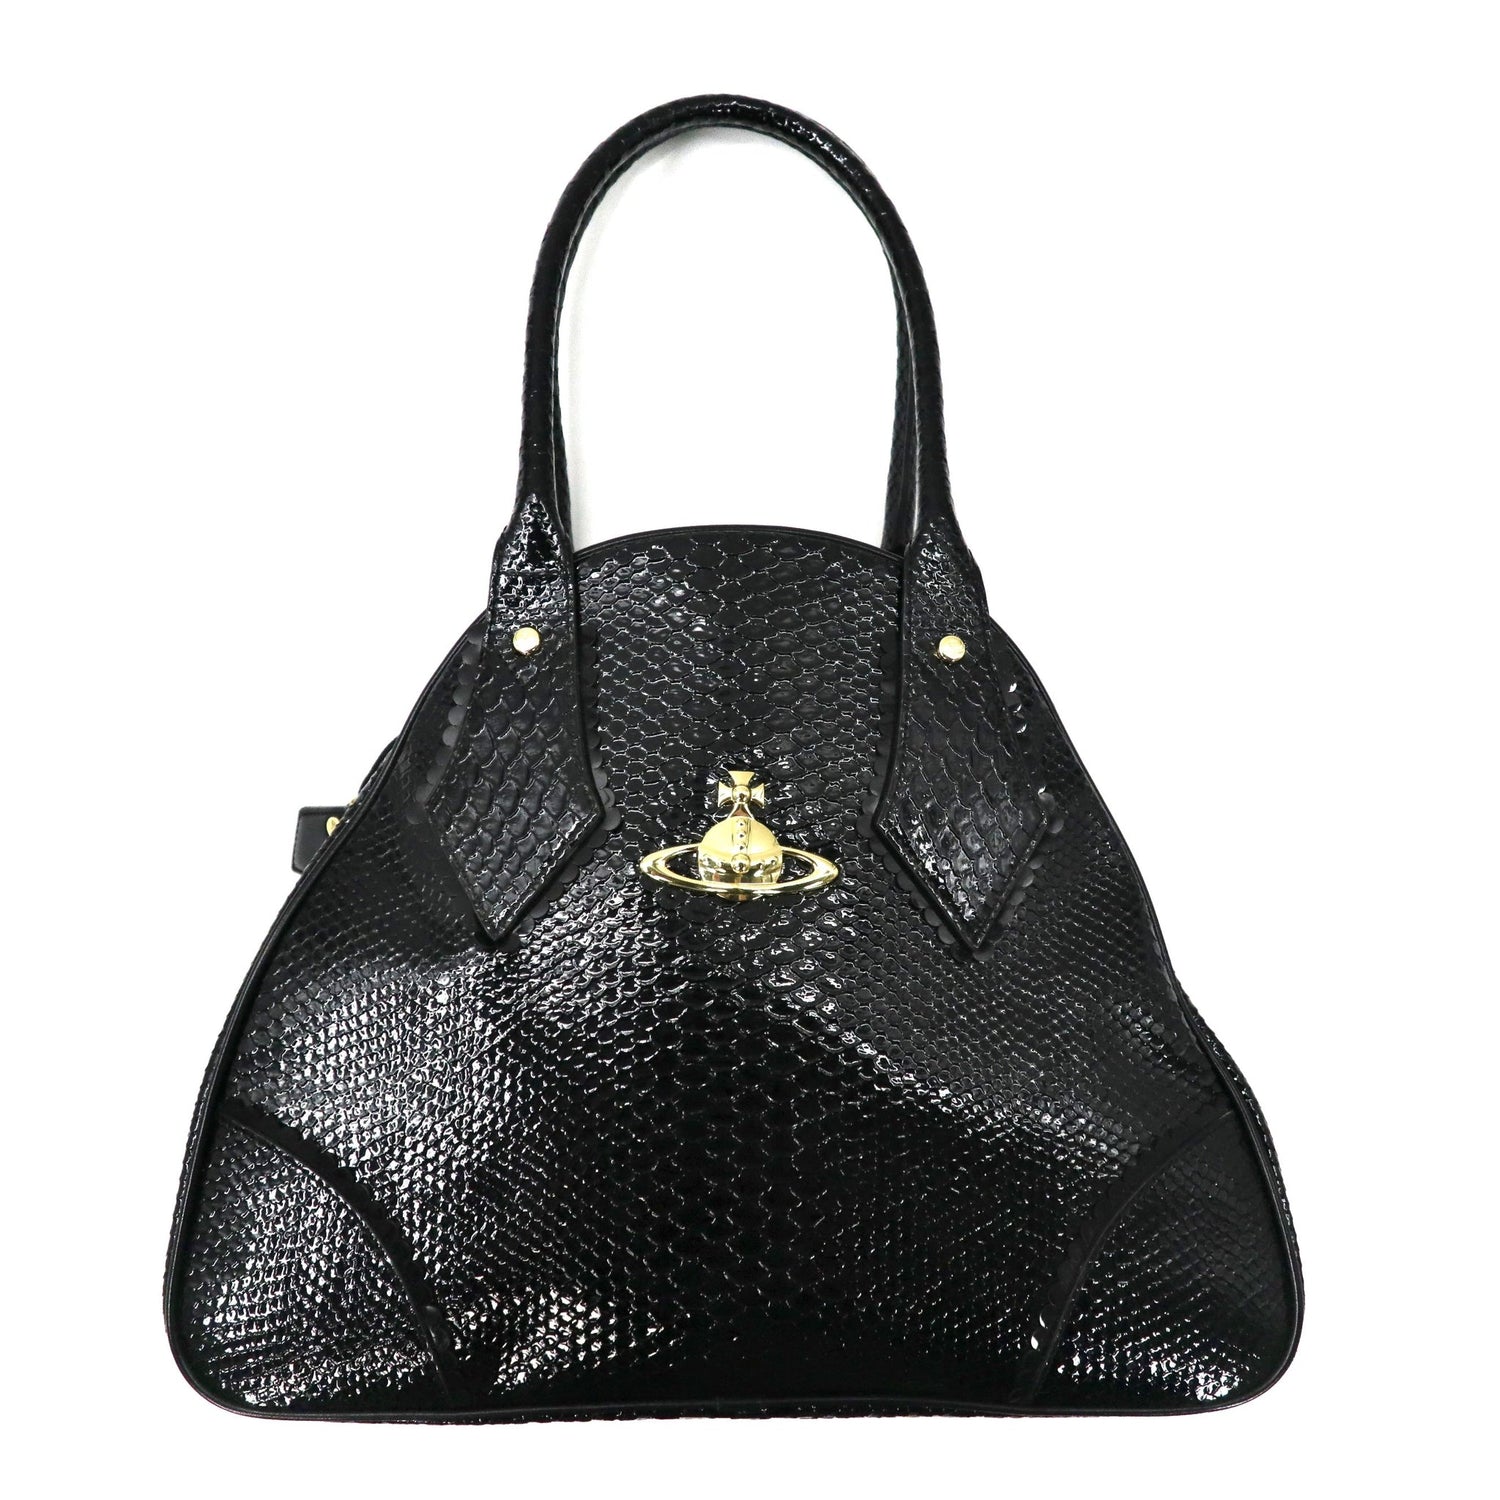 VIVIENNE WESTWOOD Handbag Black Leather Frilly Snake 12-02-951014 ...